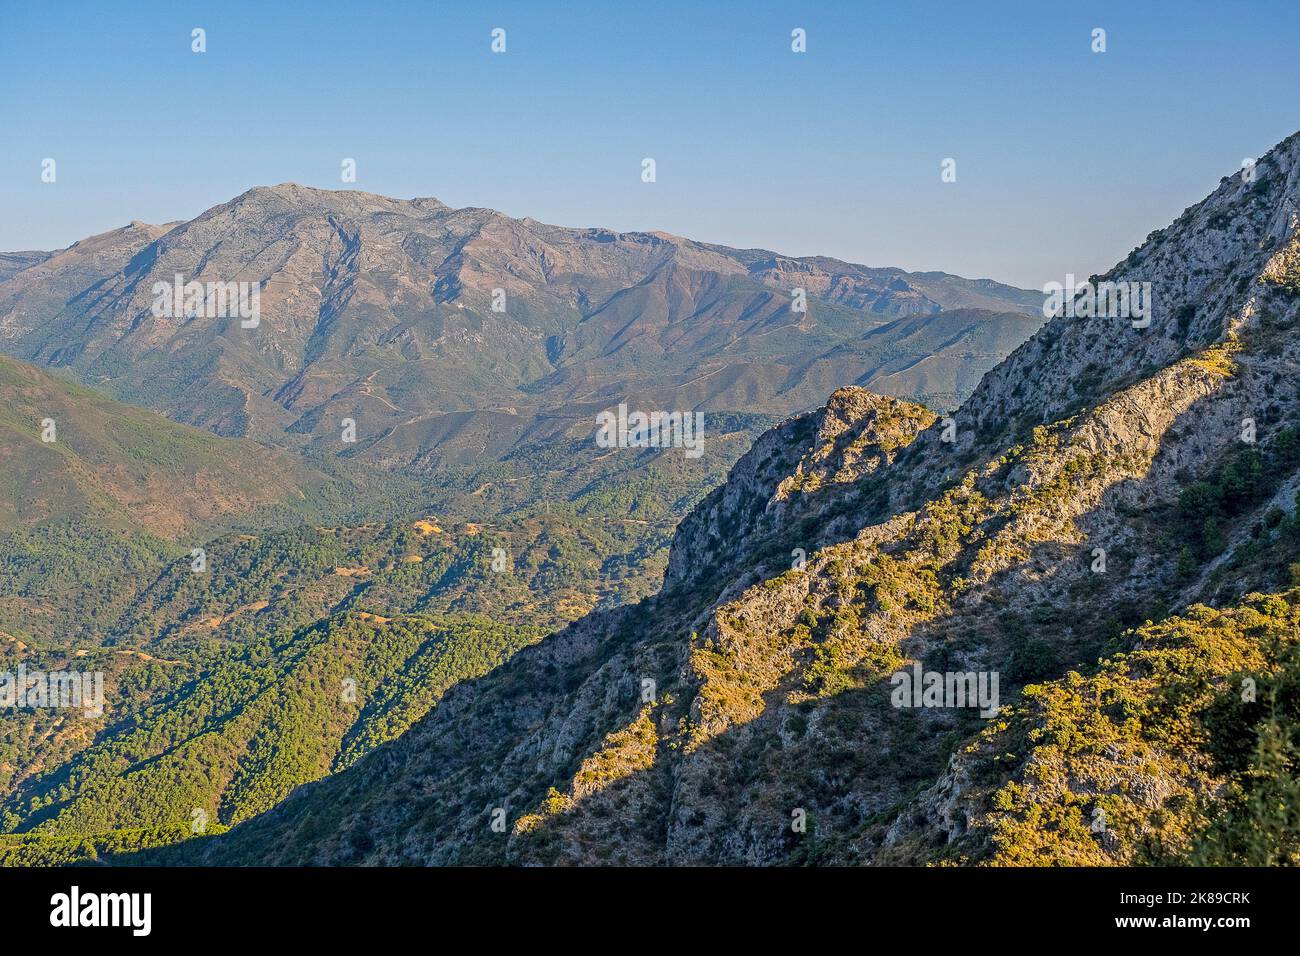 Torrecilla peak, Parque Nacional de la Sierra de las Nieves, Malaga, Spain Stock Photo